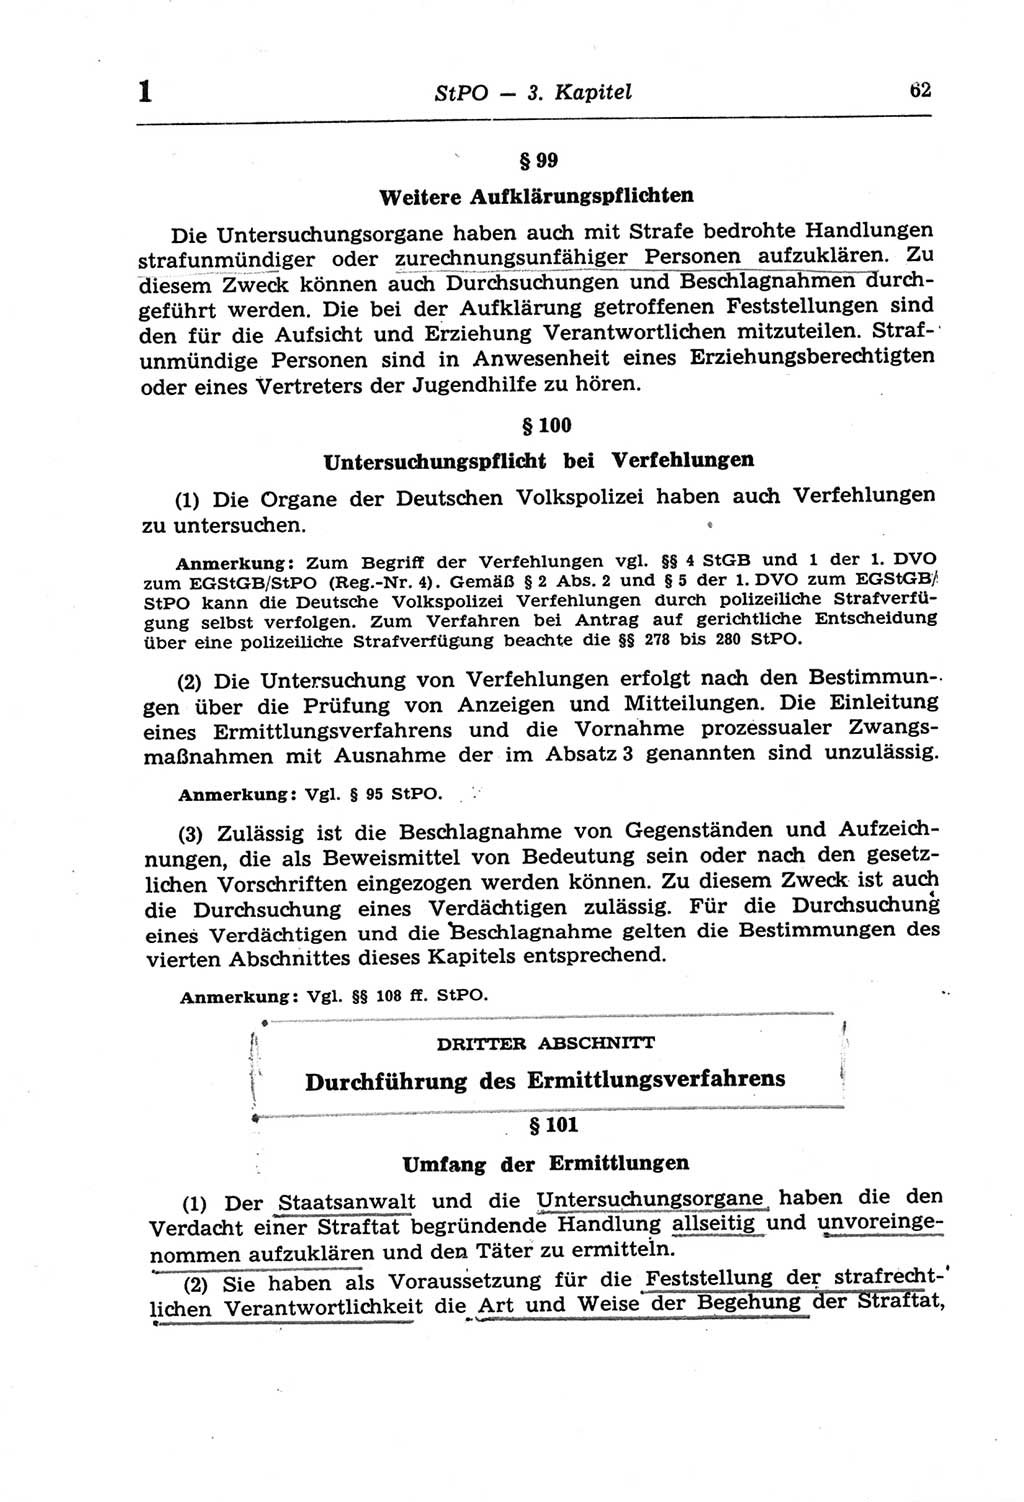 Strafprozeßordnung (StPO) der Deutschen Demokratischen Republik (DDR) und angrenzende Gesetze und Bestimmungen 1968, Seite 62 (StPO Ges. Bstgn. DDR 1968, S. 62)